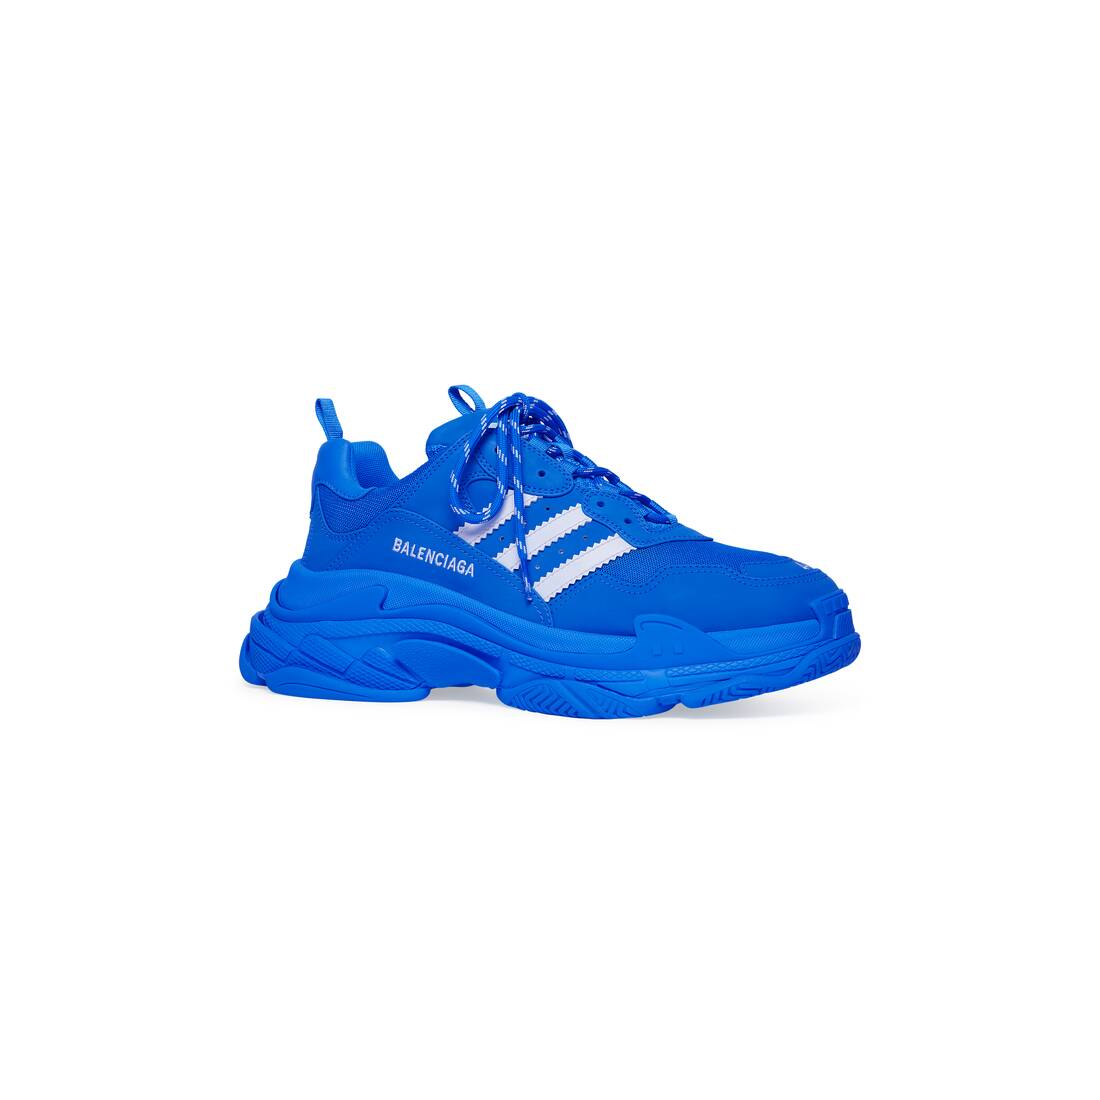 ブルー の ウィメンズ Balenciaga / Adidas Triple S スニーカー 